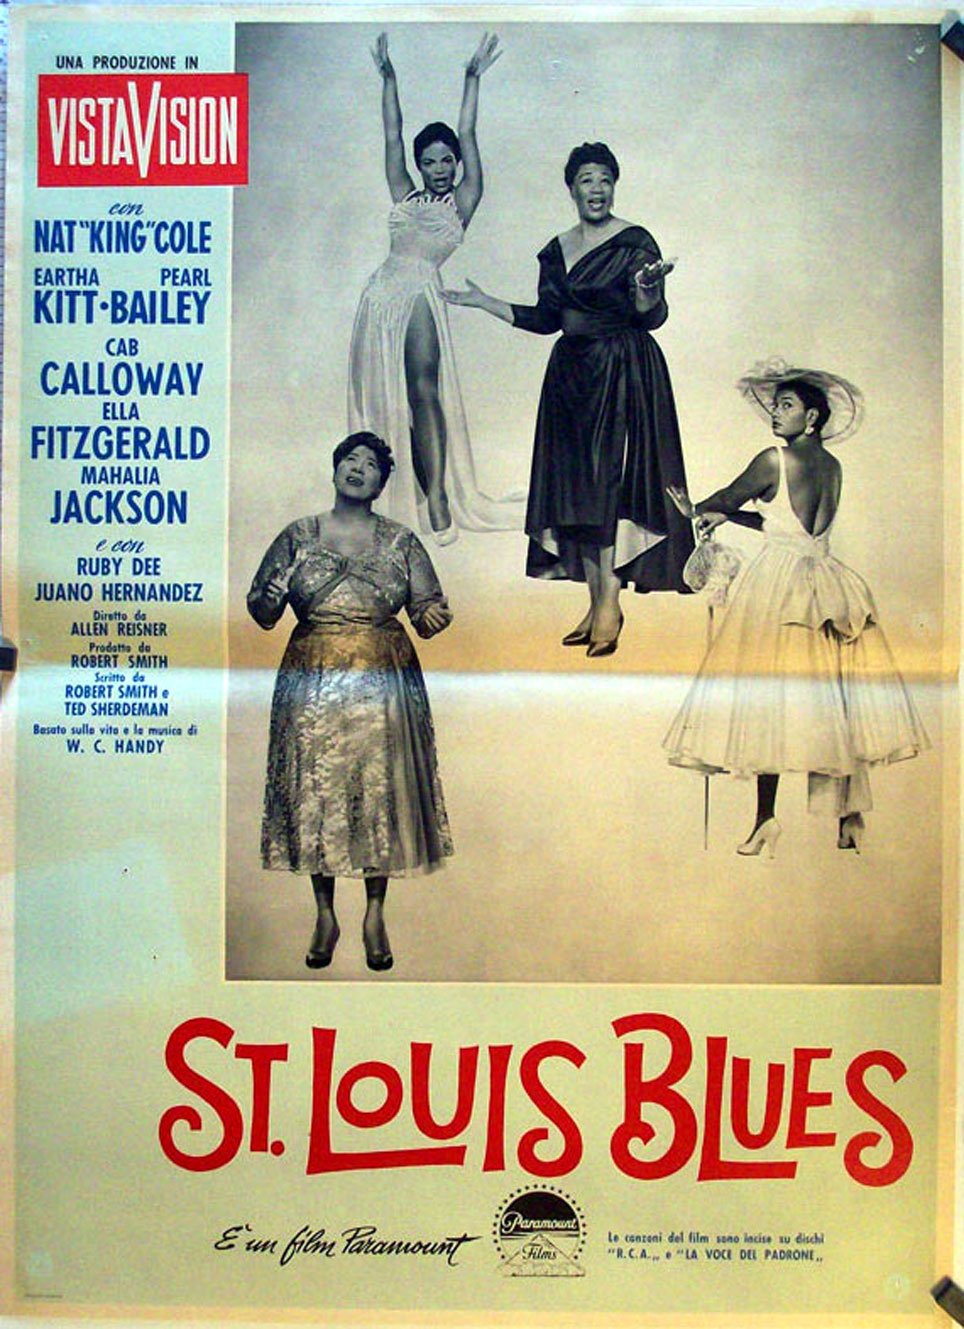 "ST. LOUIS BLUES" MOVIE POSTER "SAINT LOUIS BLUES" MOVIE POSTER